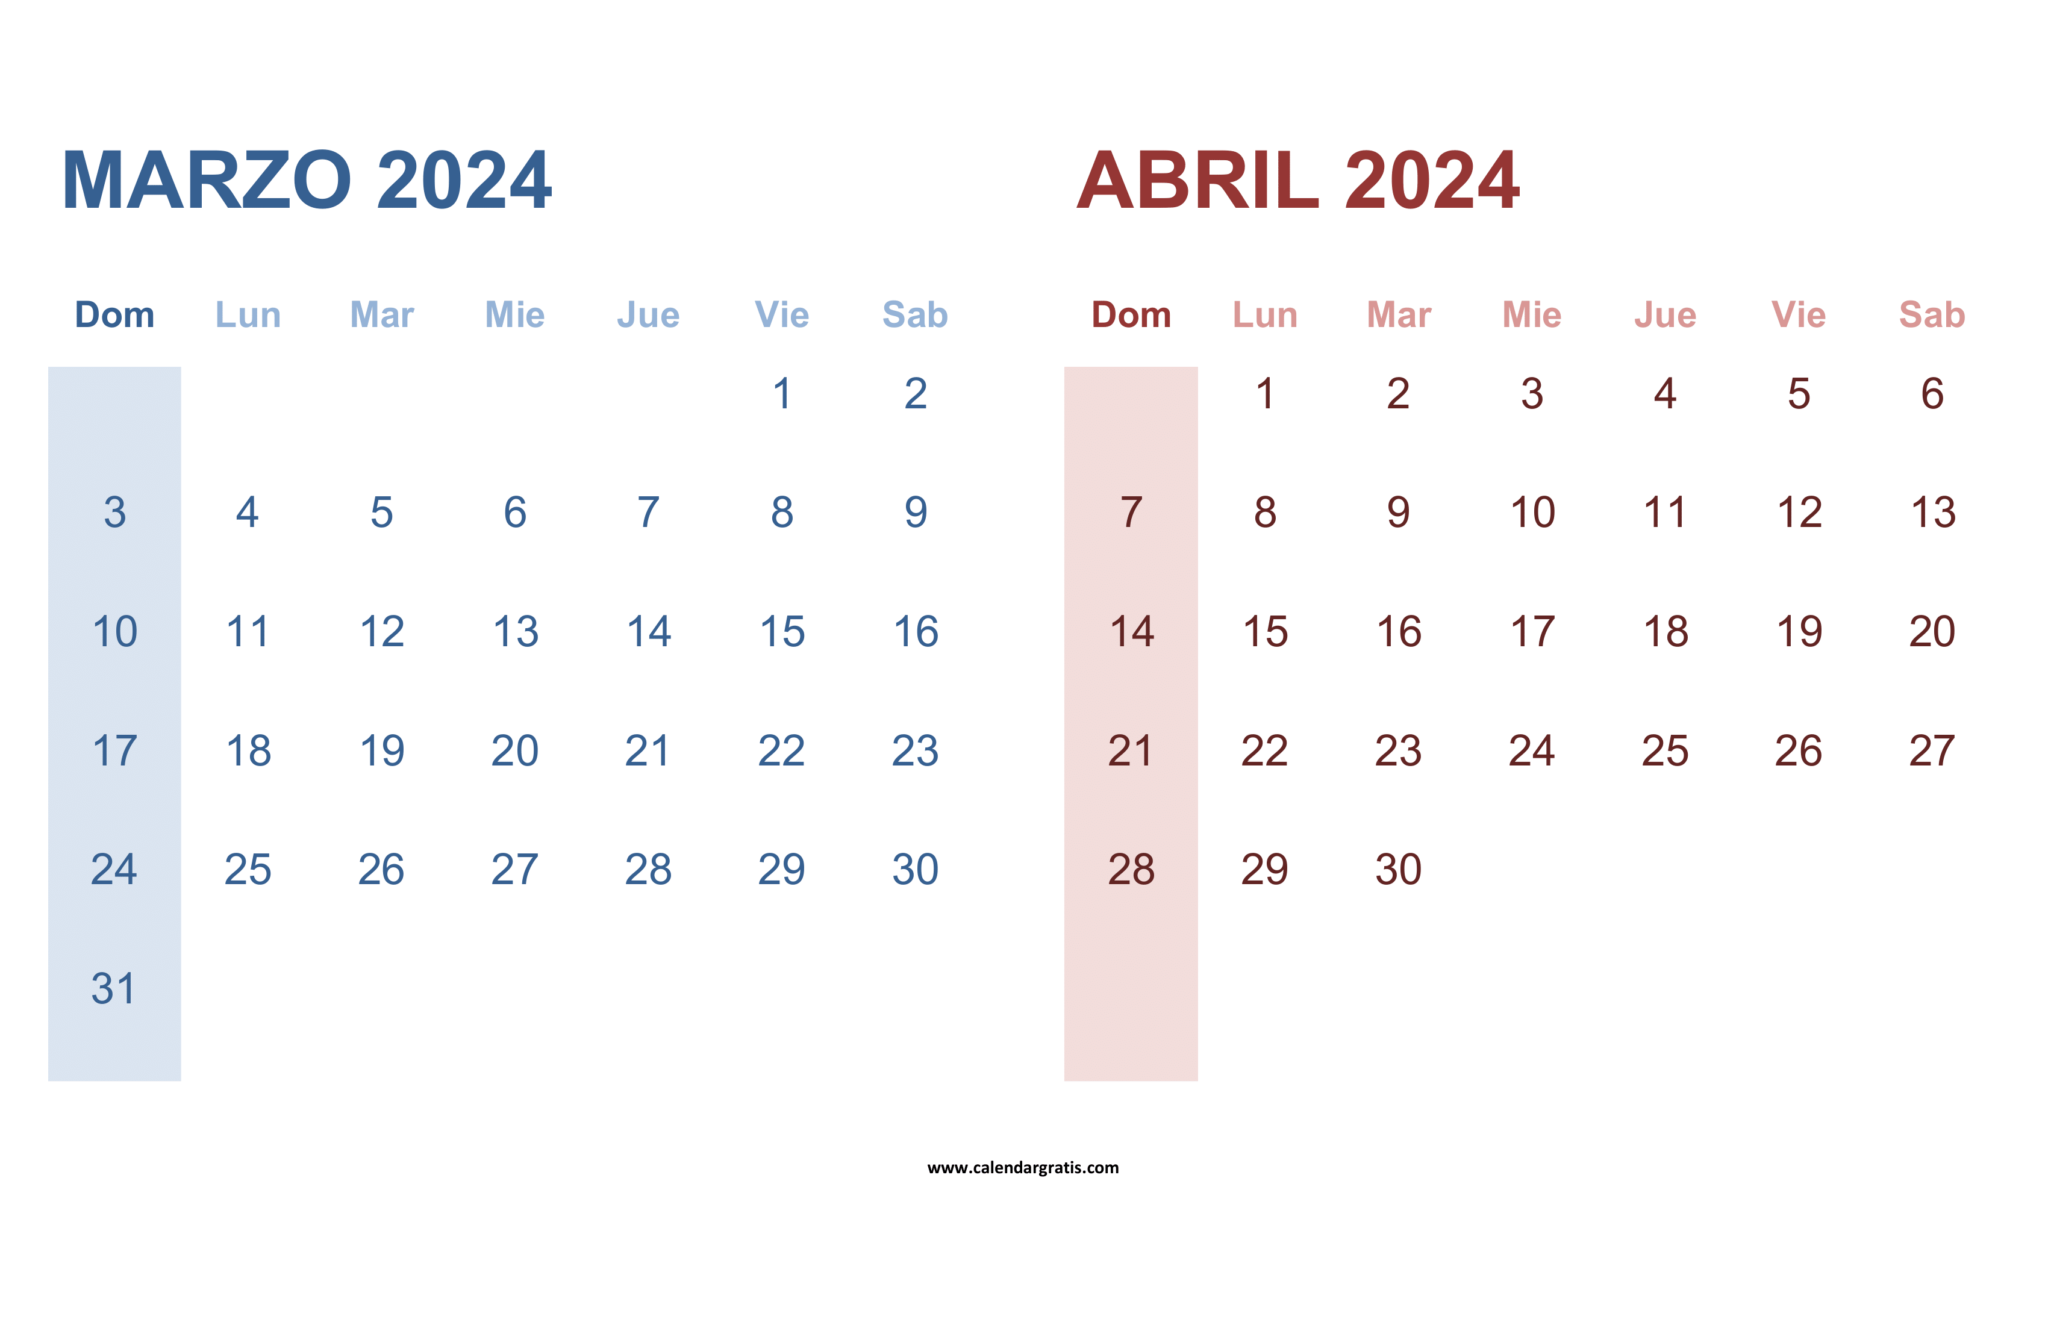 Calendario Marzo y Abril 2024